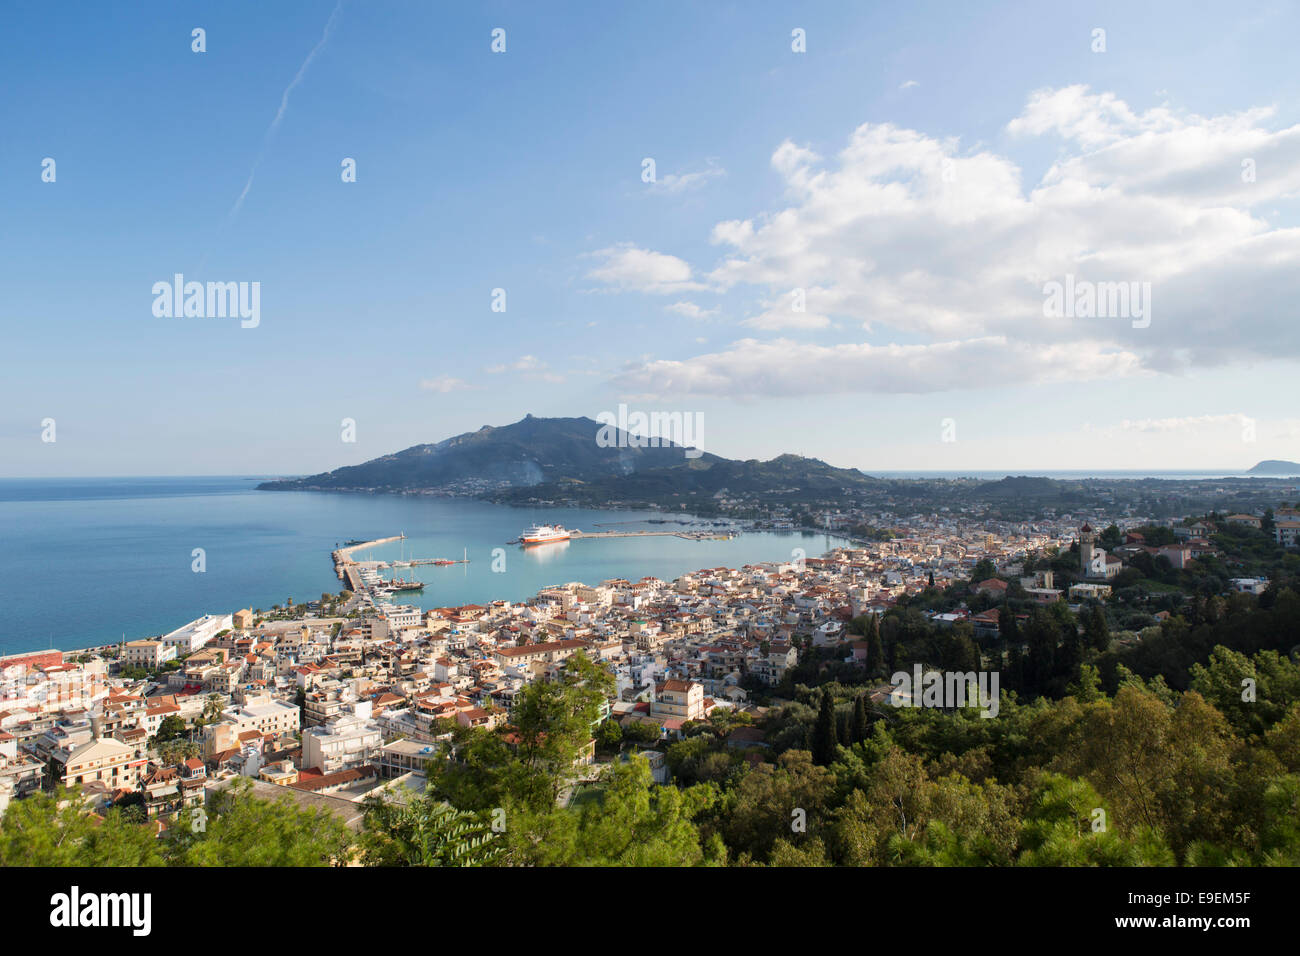 Overview city of Zakynthos (Zante) at the island Zakynthos (Greece) Stock Photo